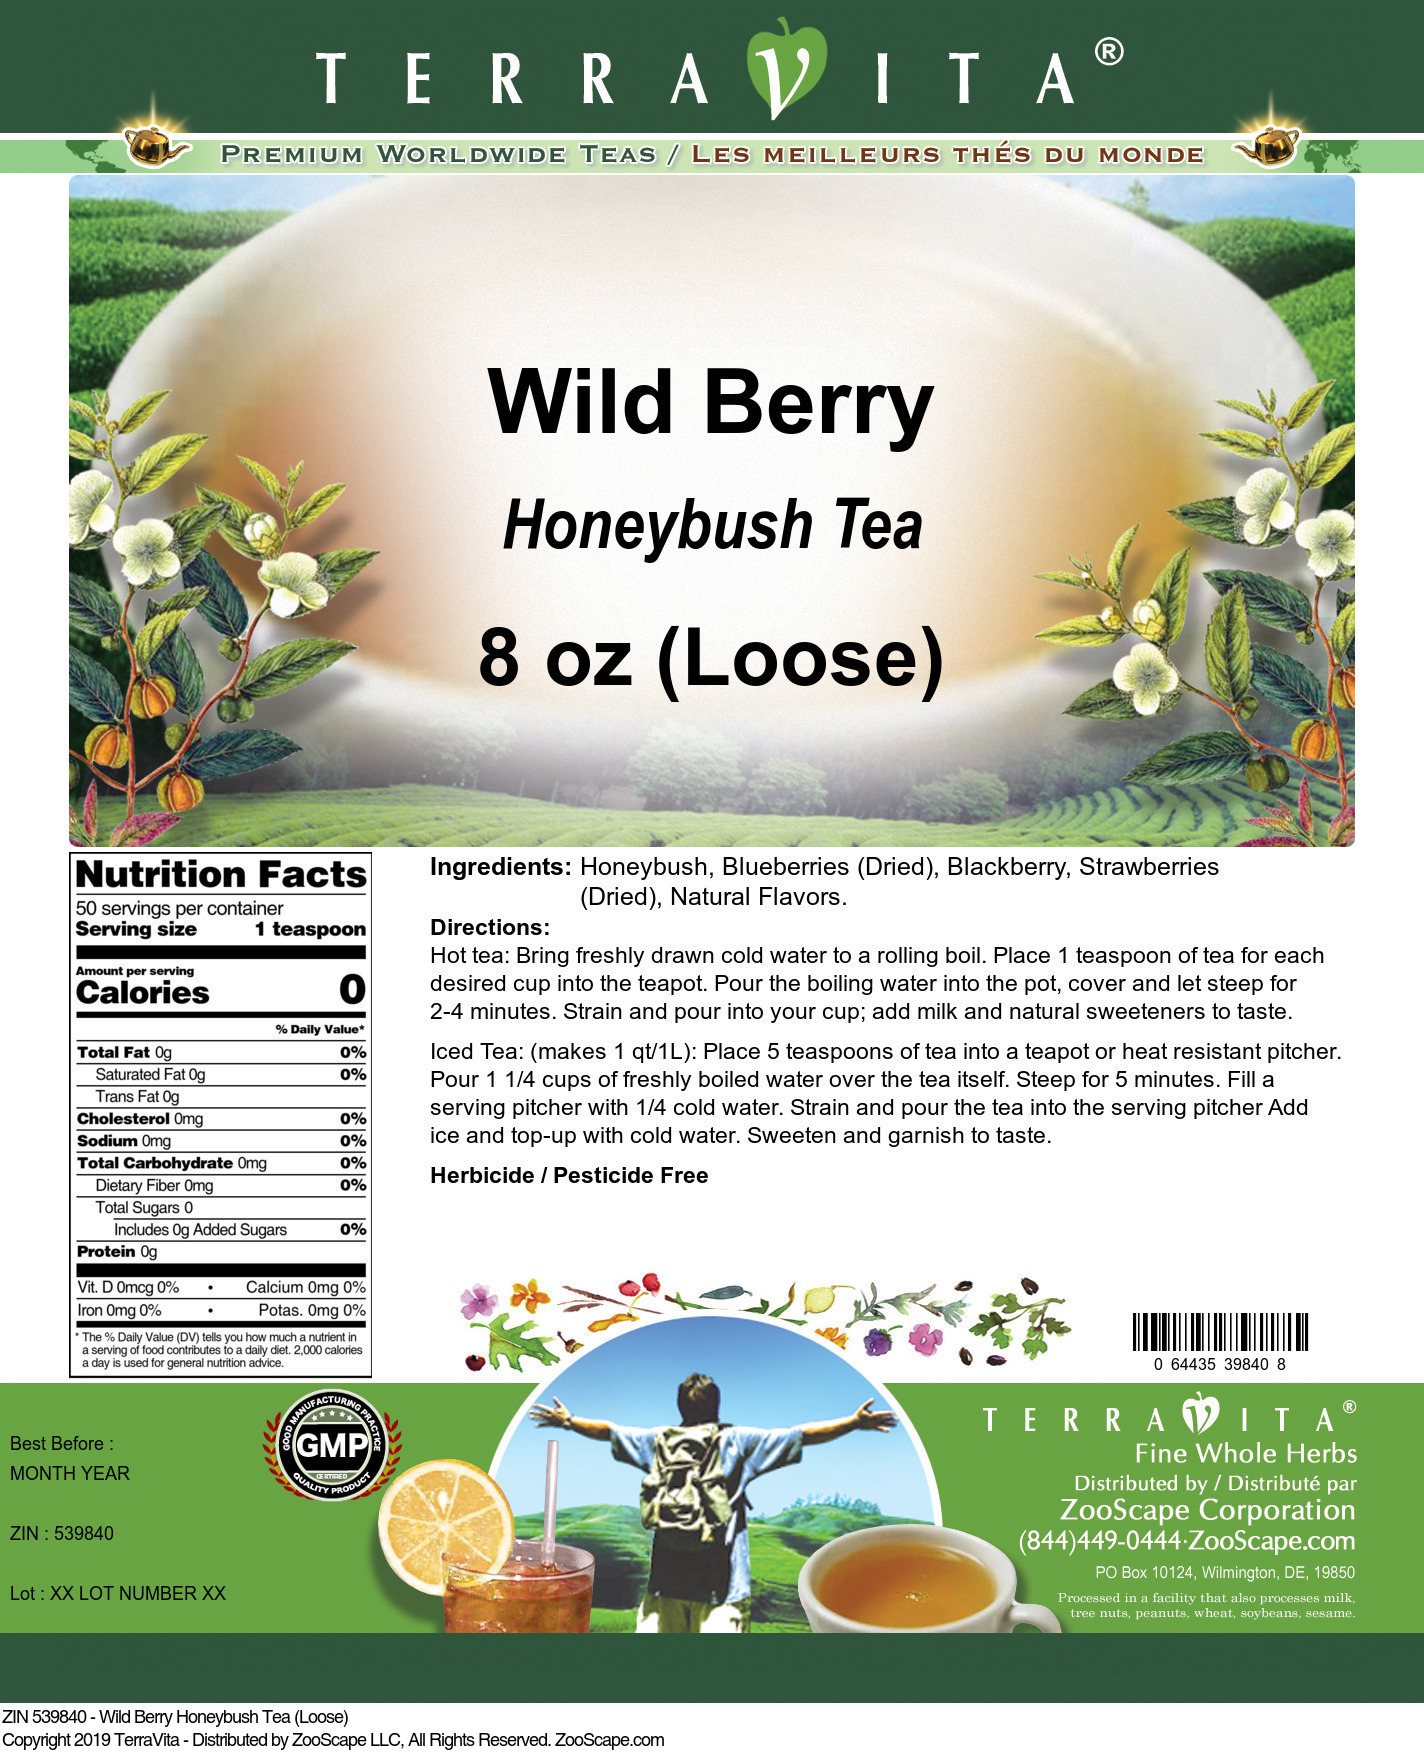 Wild Berry Honeybush Tea (Loose) - Label